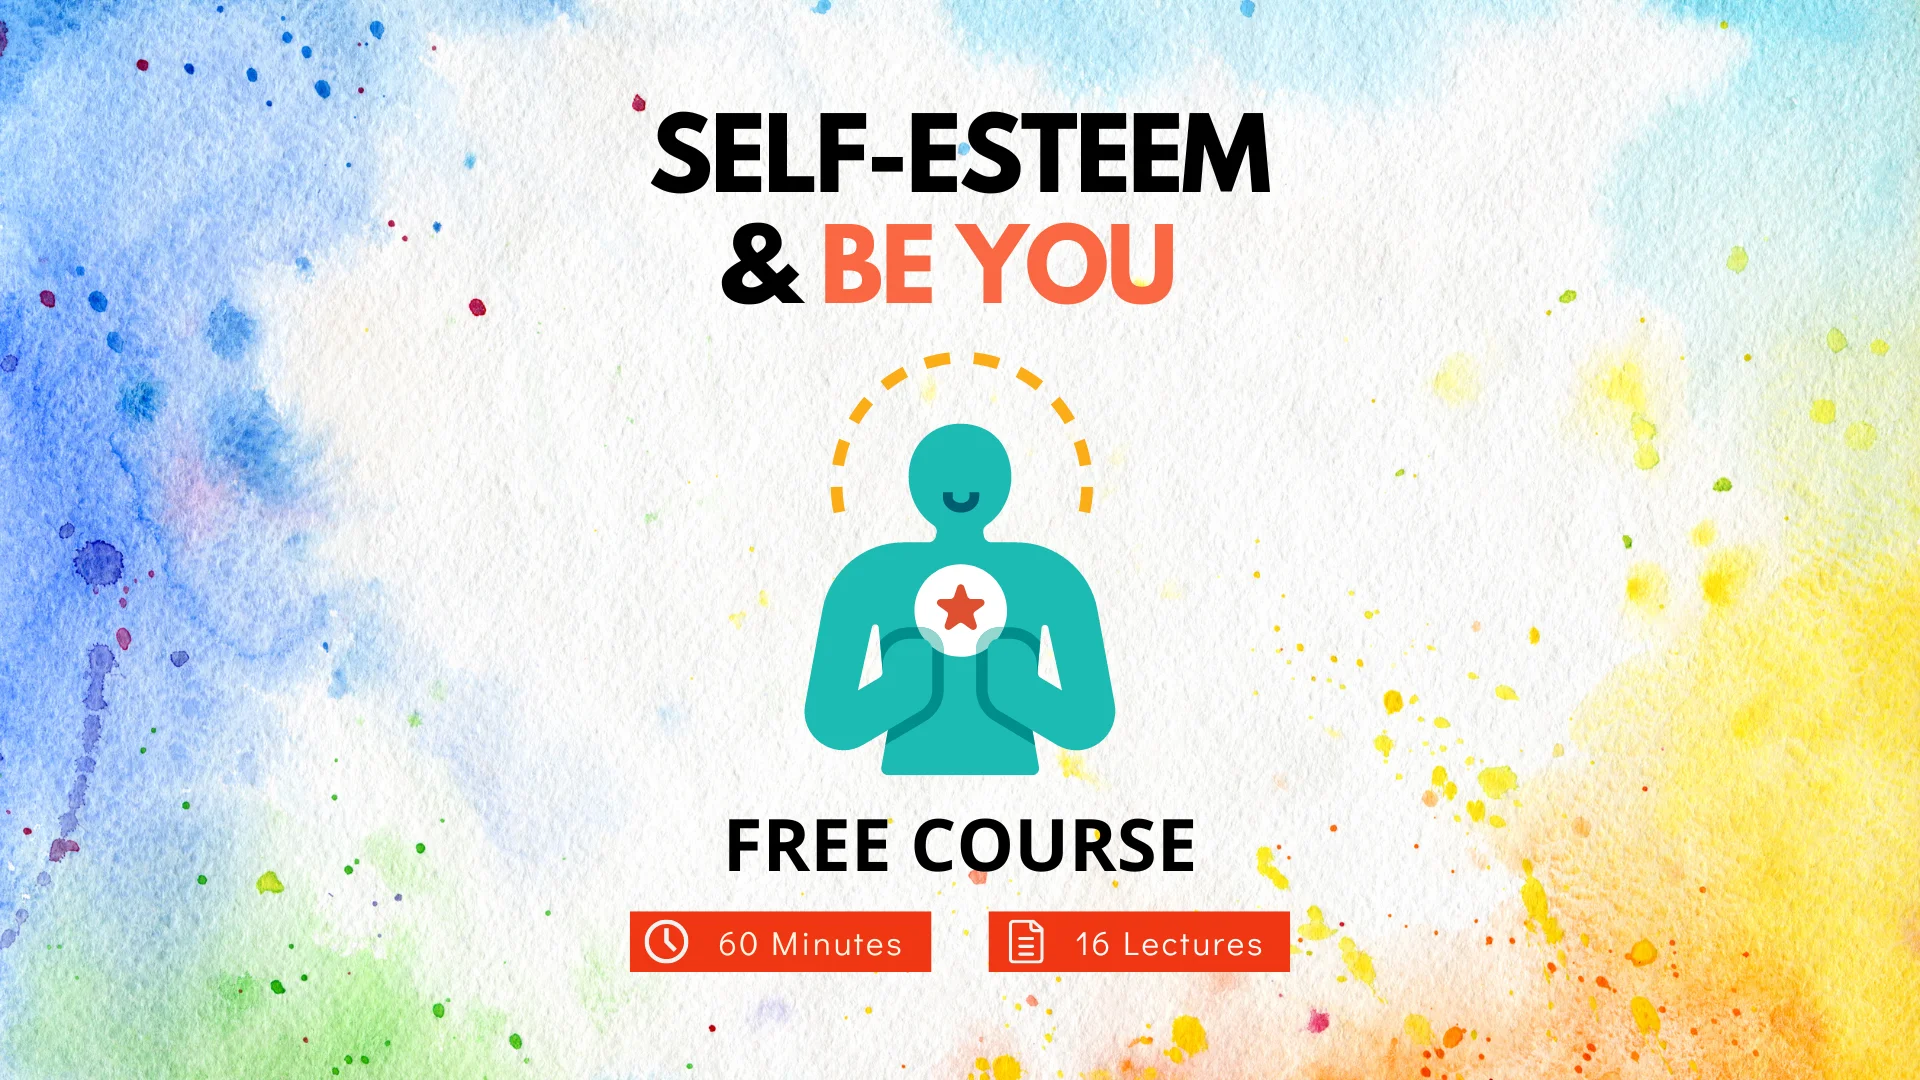 Self-esteem & Be You Course Featured Image 1